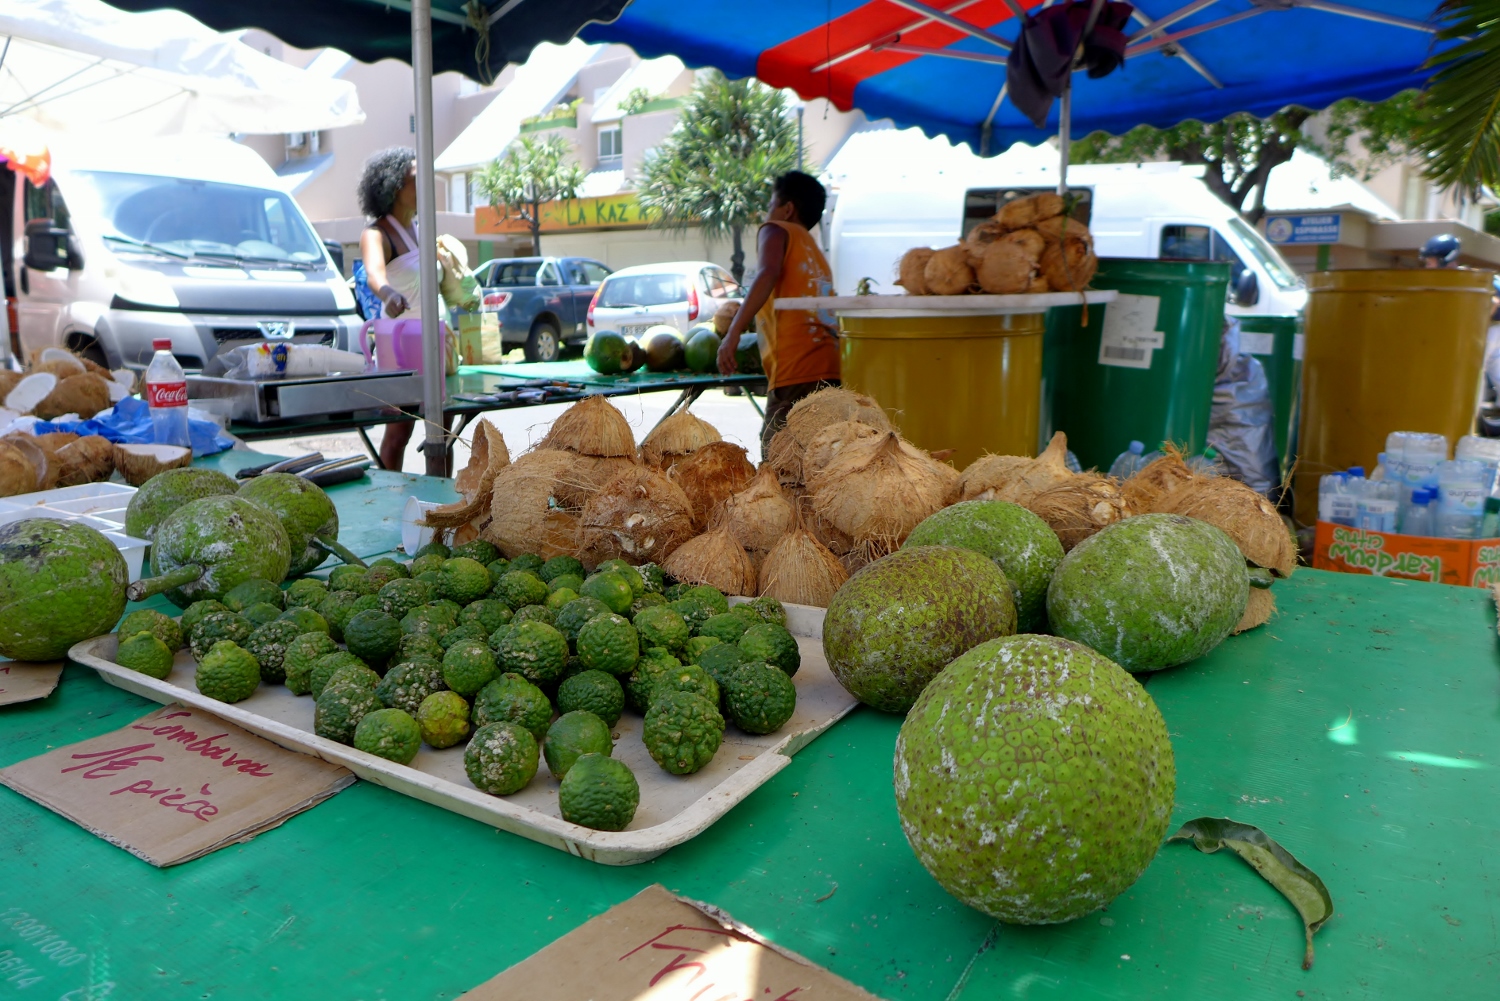 L’étal des noix de cocos et des combavas, les petites boules vertes de la famille des agrumes. 